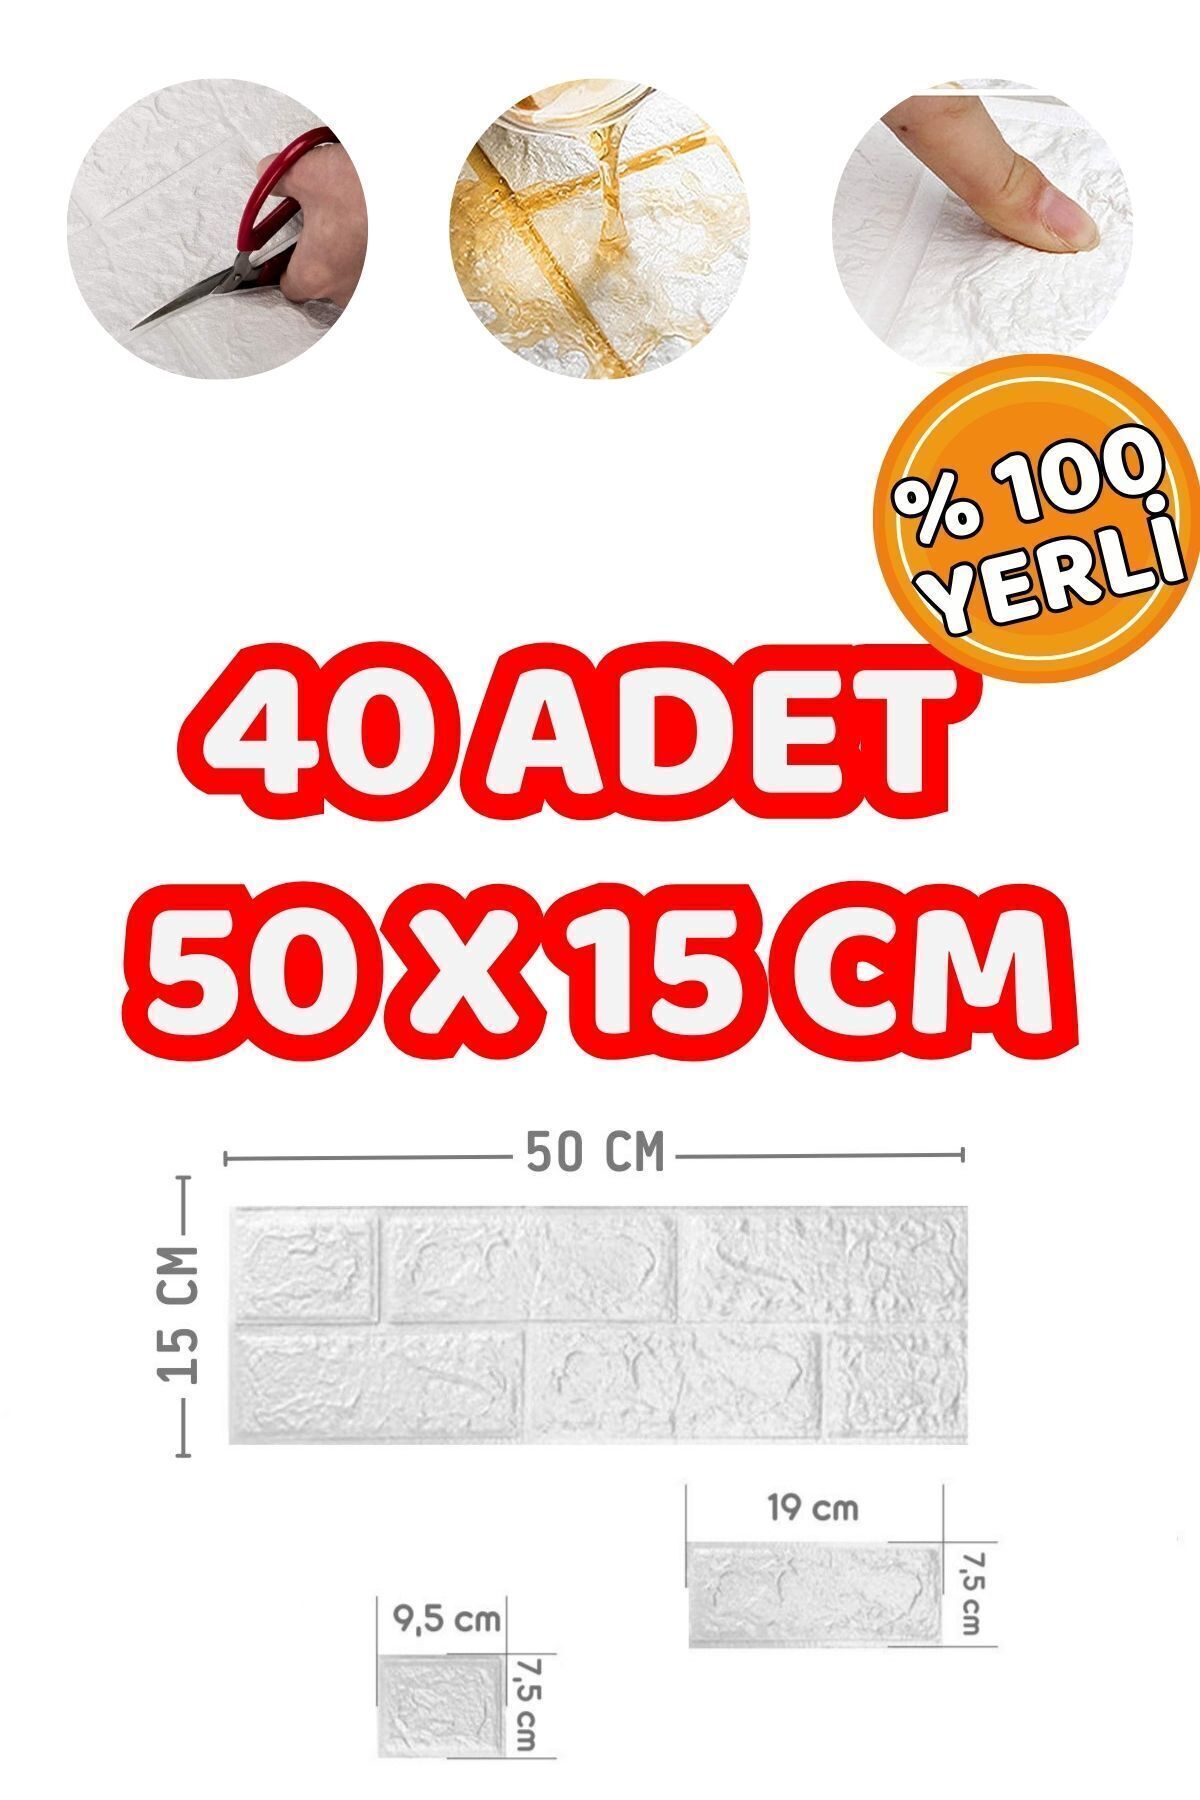 Mefawall 50 x 15 CM - 3 M2 40 Adet Adet Kendinden Yapışkanlı Köpük Mutfak Fayans Duvar Kağıdı Paneli 3D